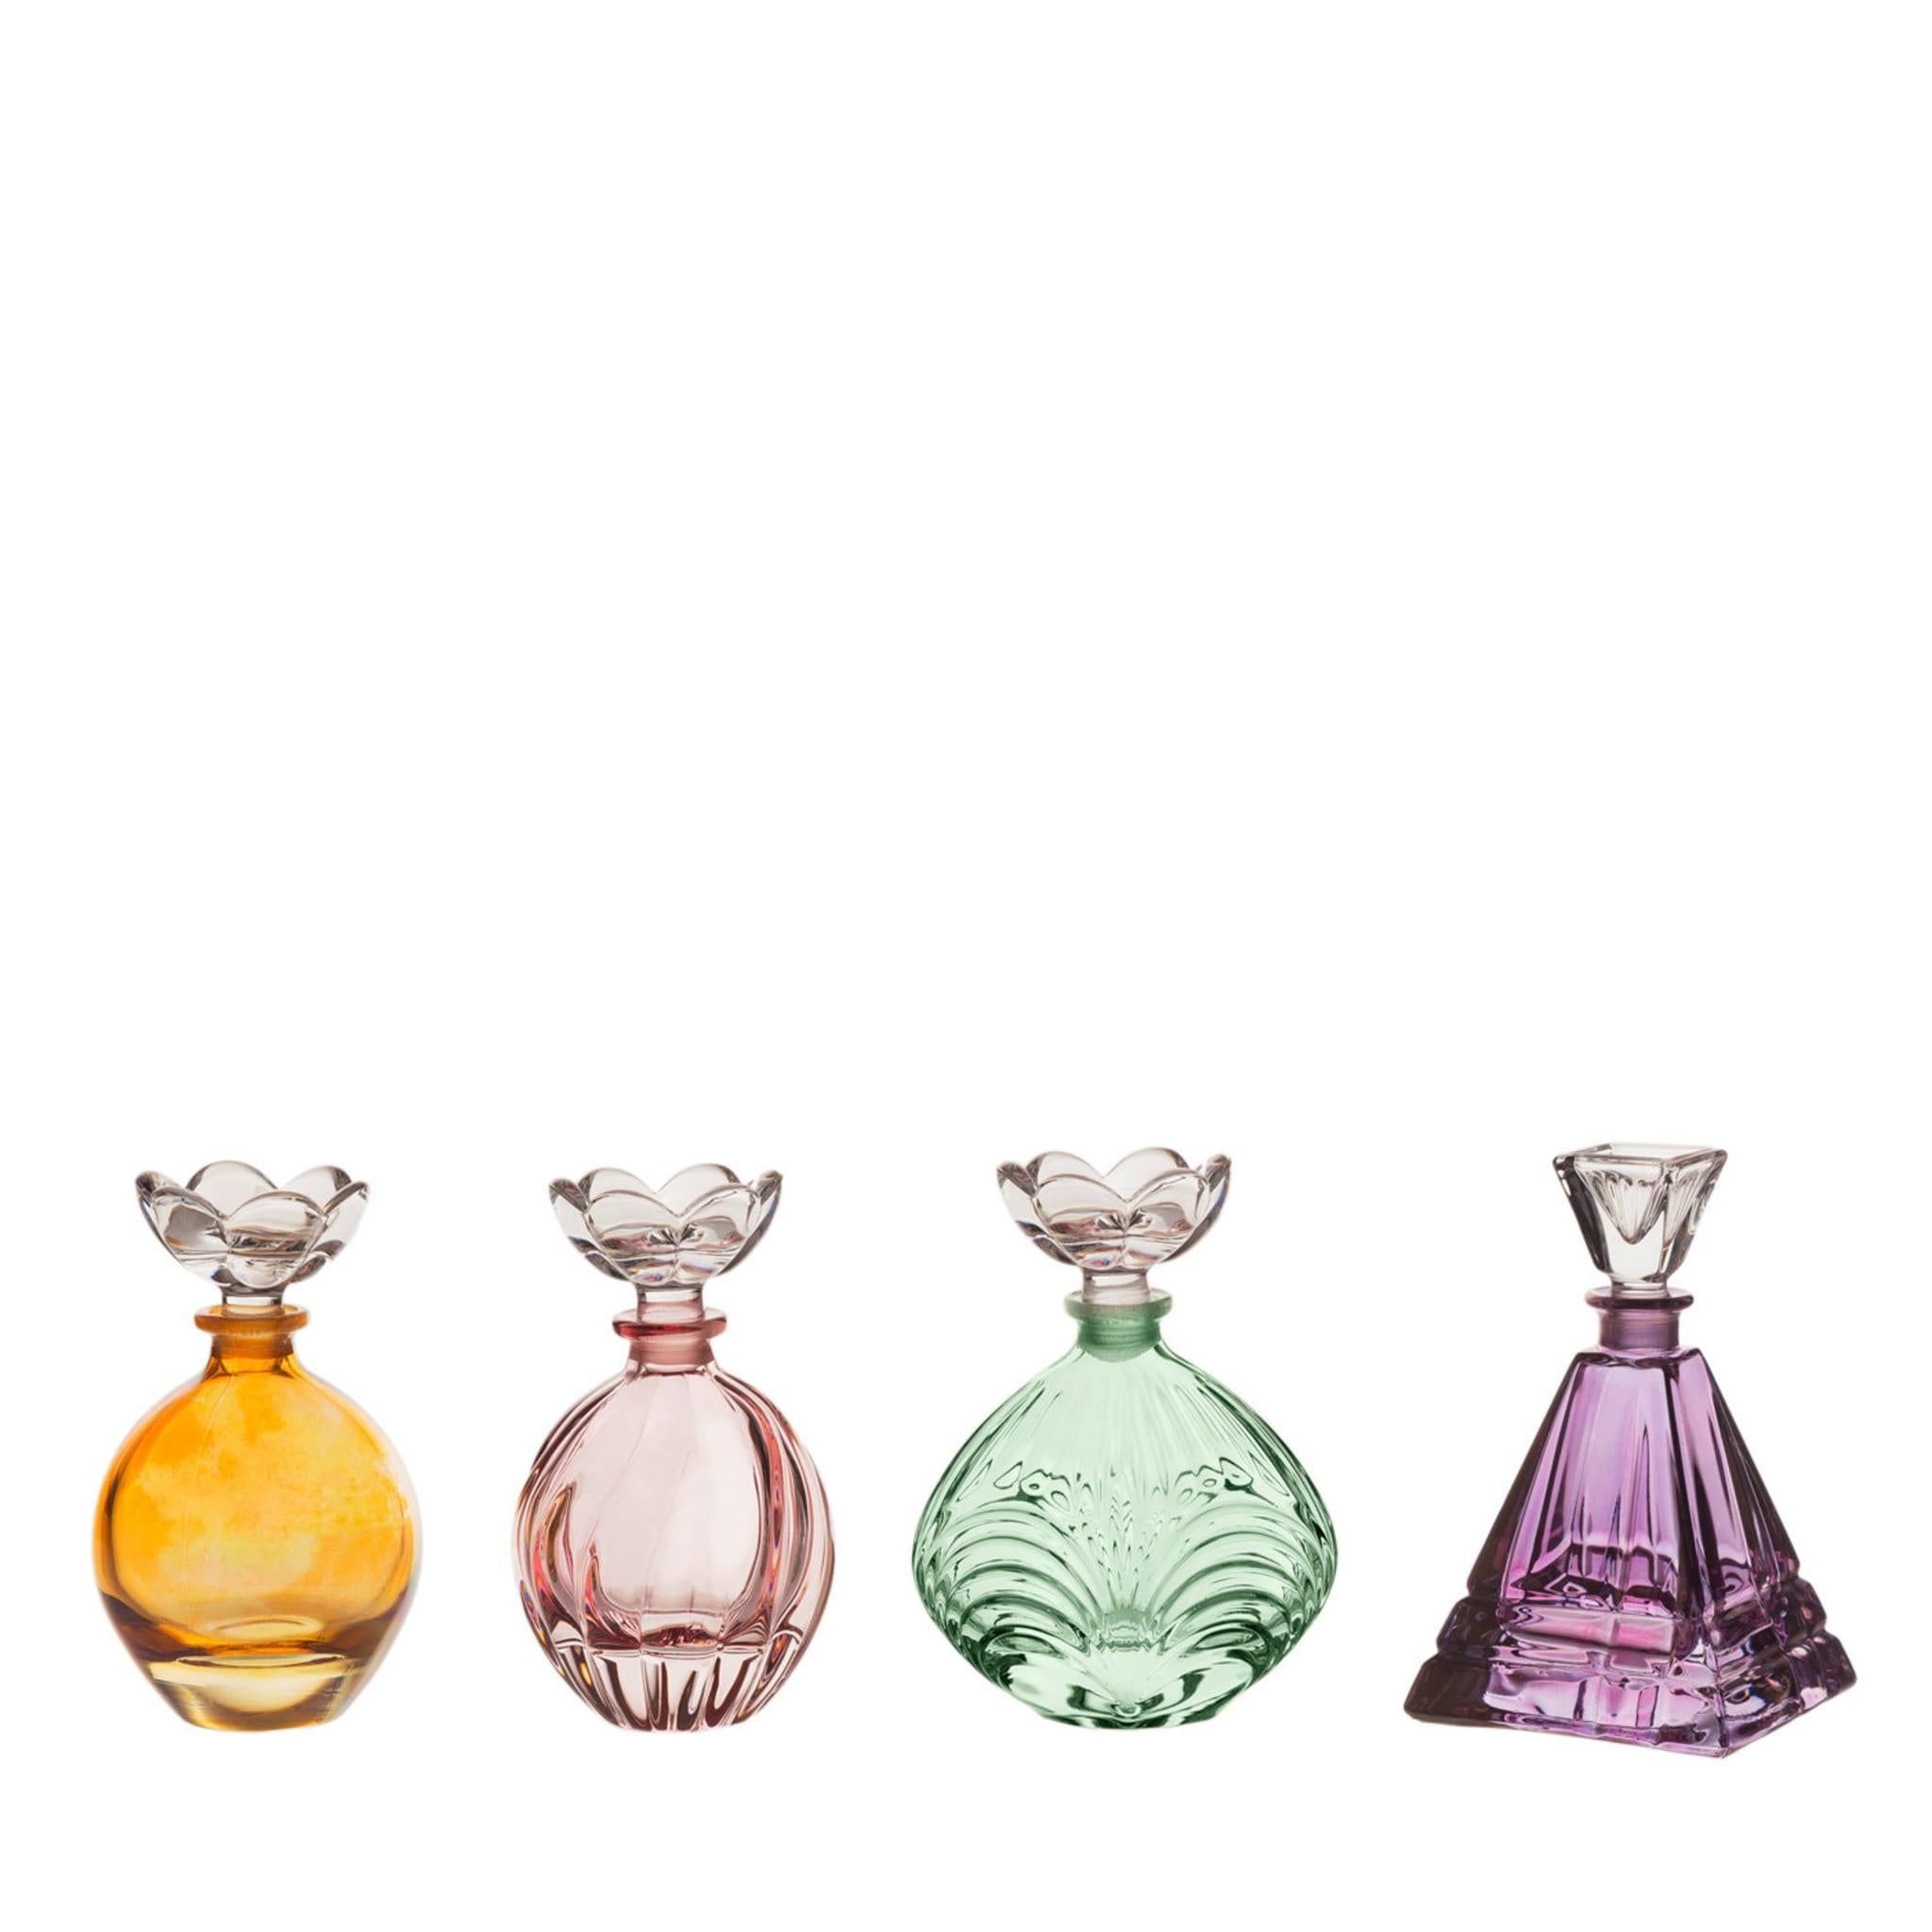 Ces élégants flacons de parfum en cristal, qui font partie de la Collection Salsa, sont une superbe addition à la table de toilette d'une chambre à coucher ou d'une salle d'eau. La silhouette traditionnelle, les décorations gravées à la main sur la